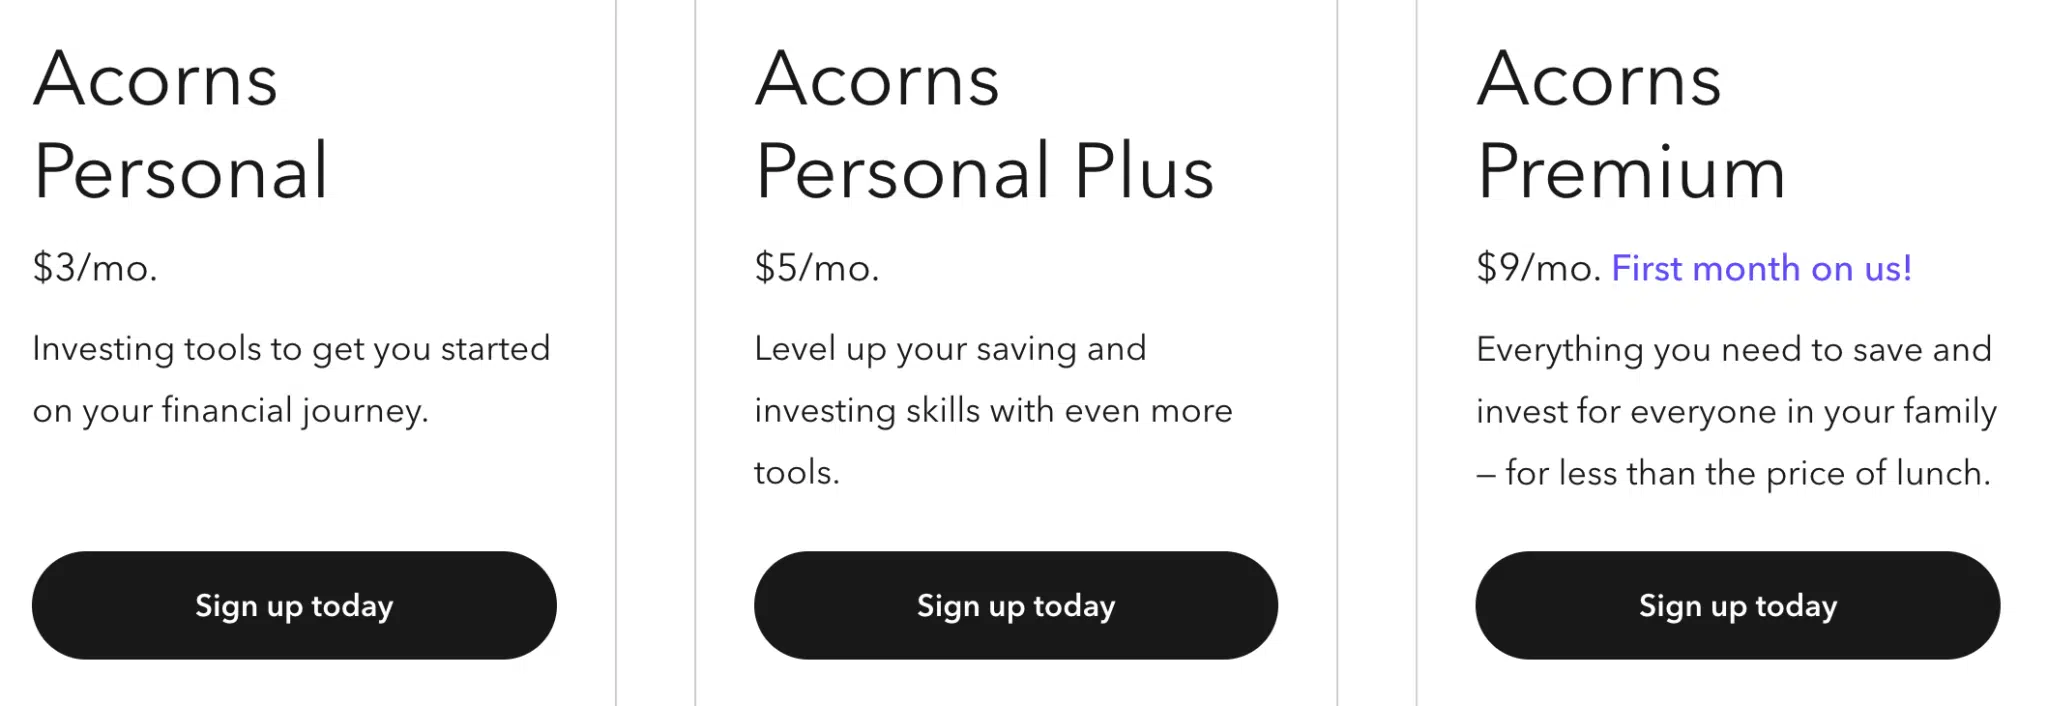 Acorns Pricing